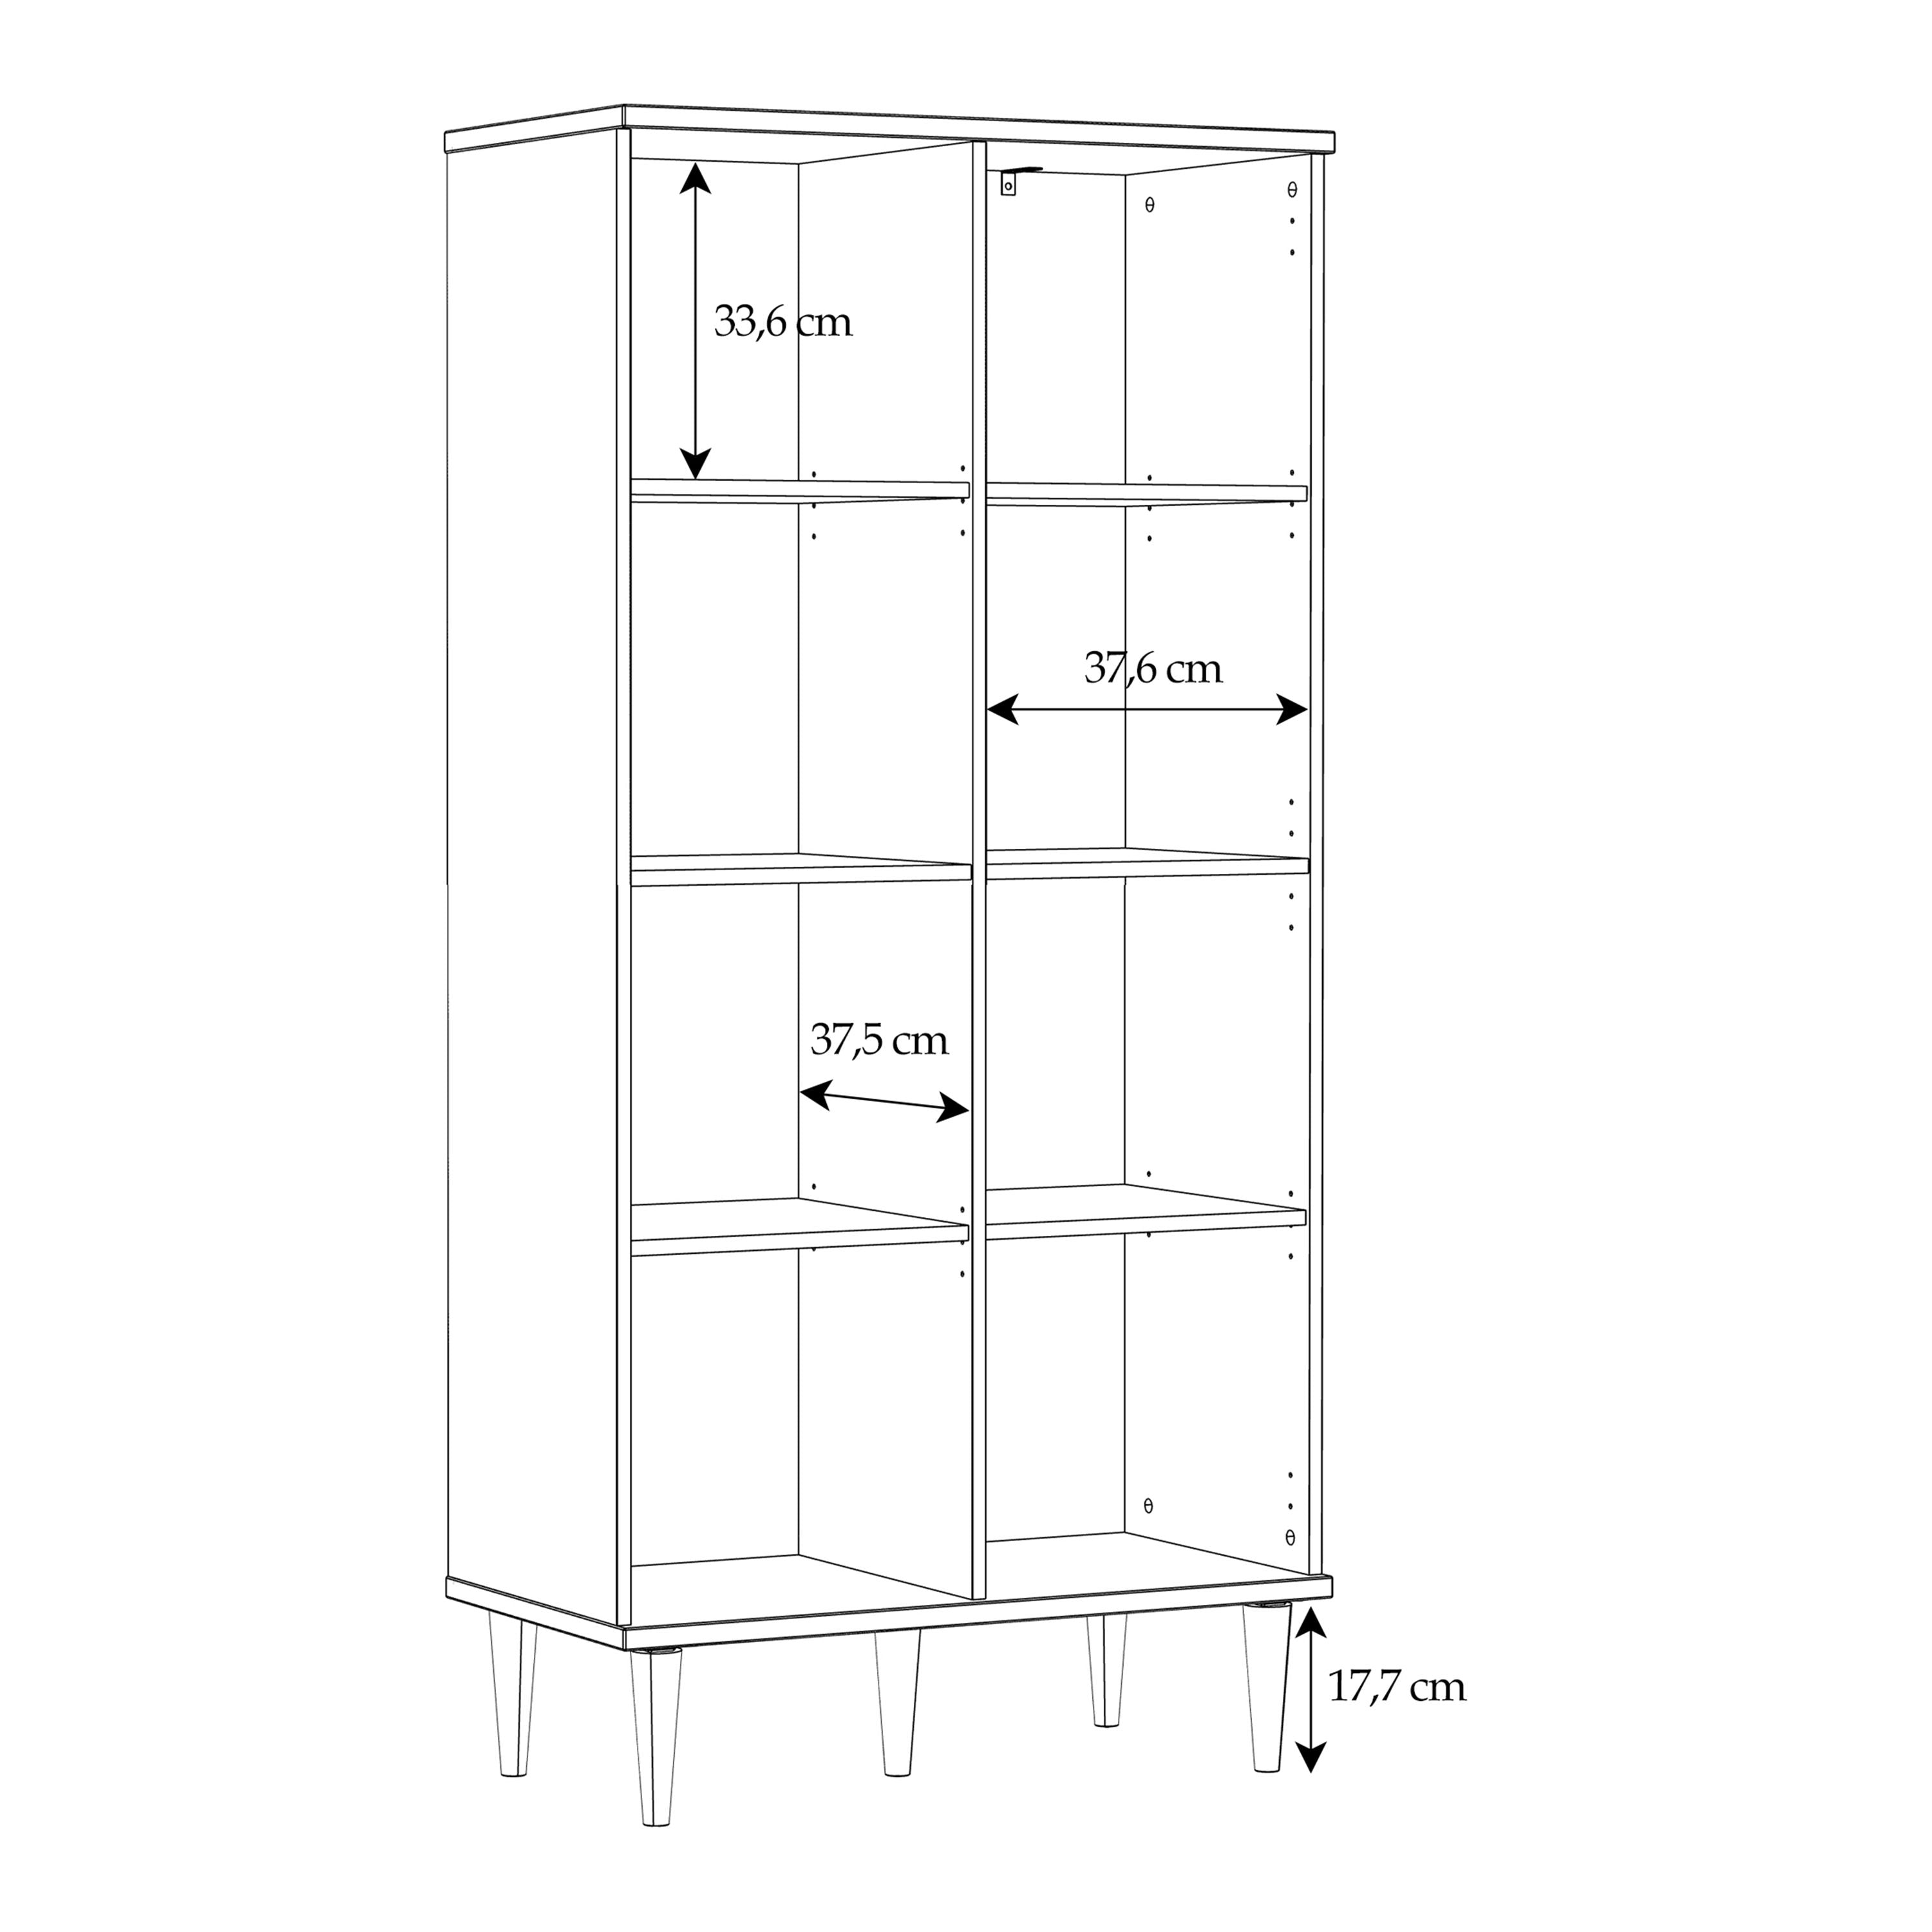 Calasetta 2 Door Display Cabinet in Rattan Furniture To Go Ltd